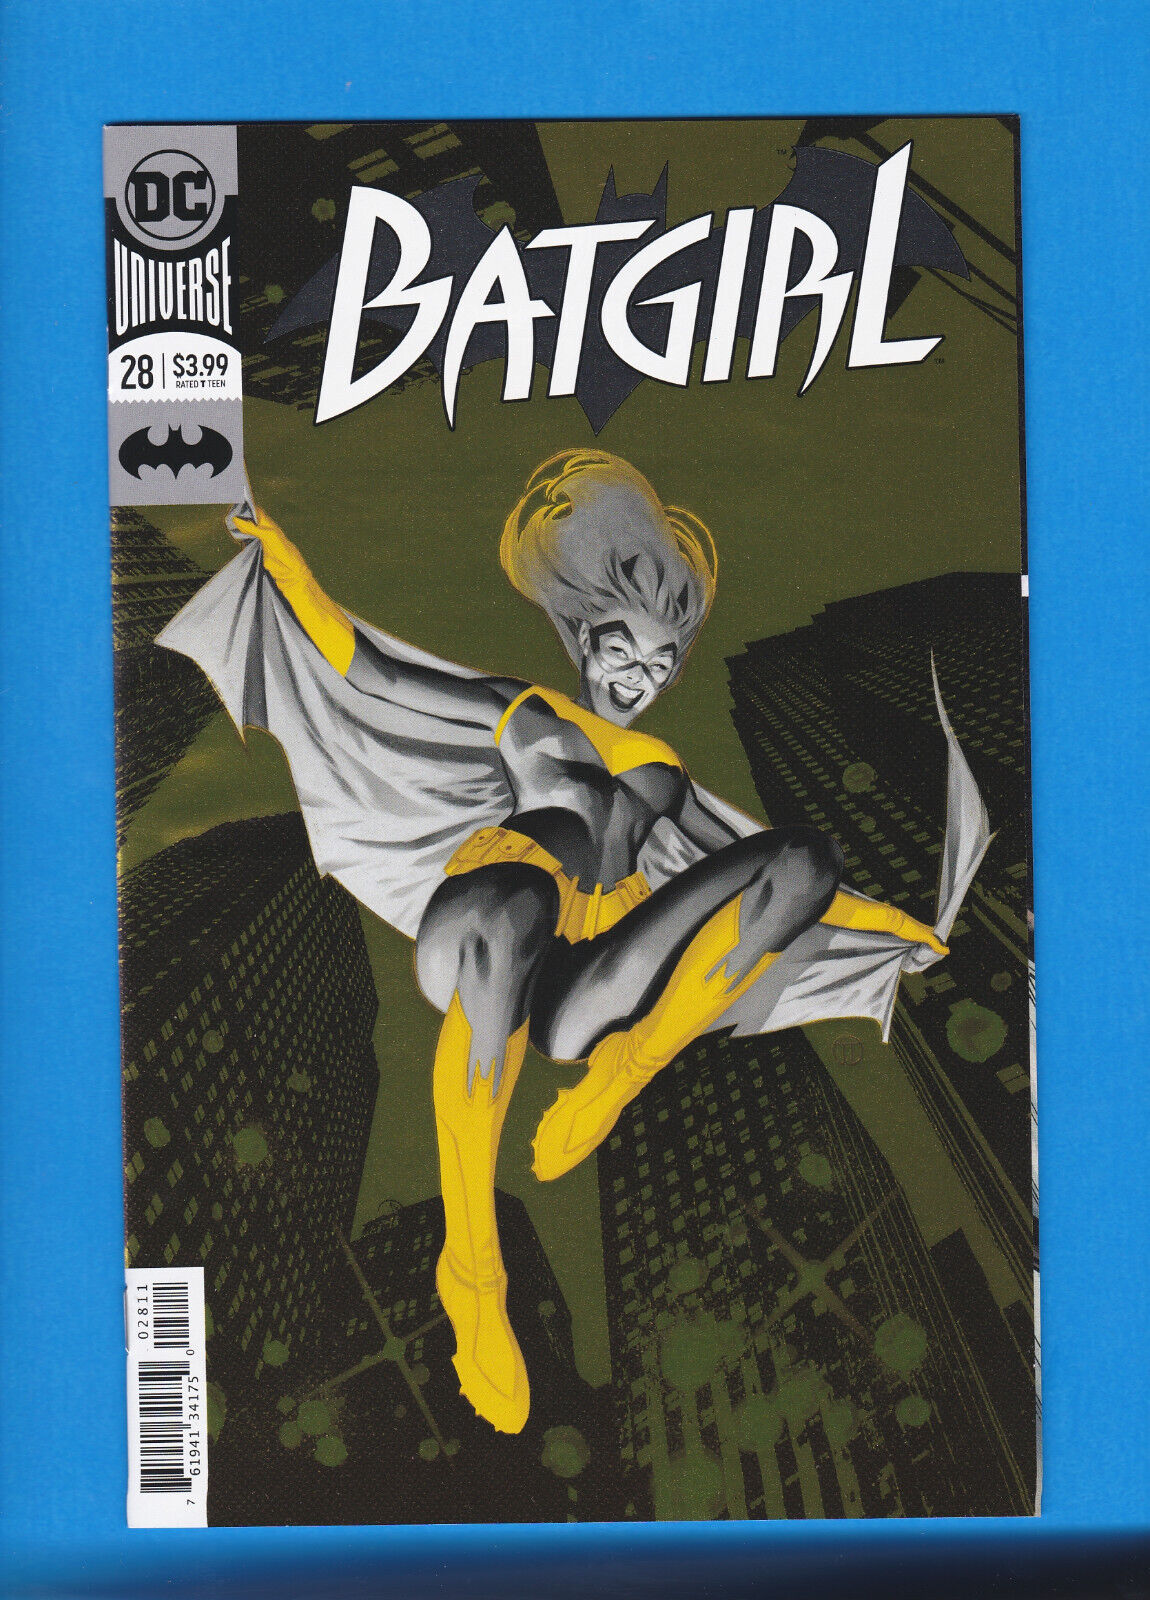 Batgirl #28 gold foil (DC Comics, December 2018)